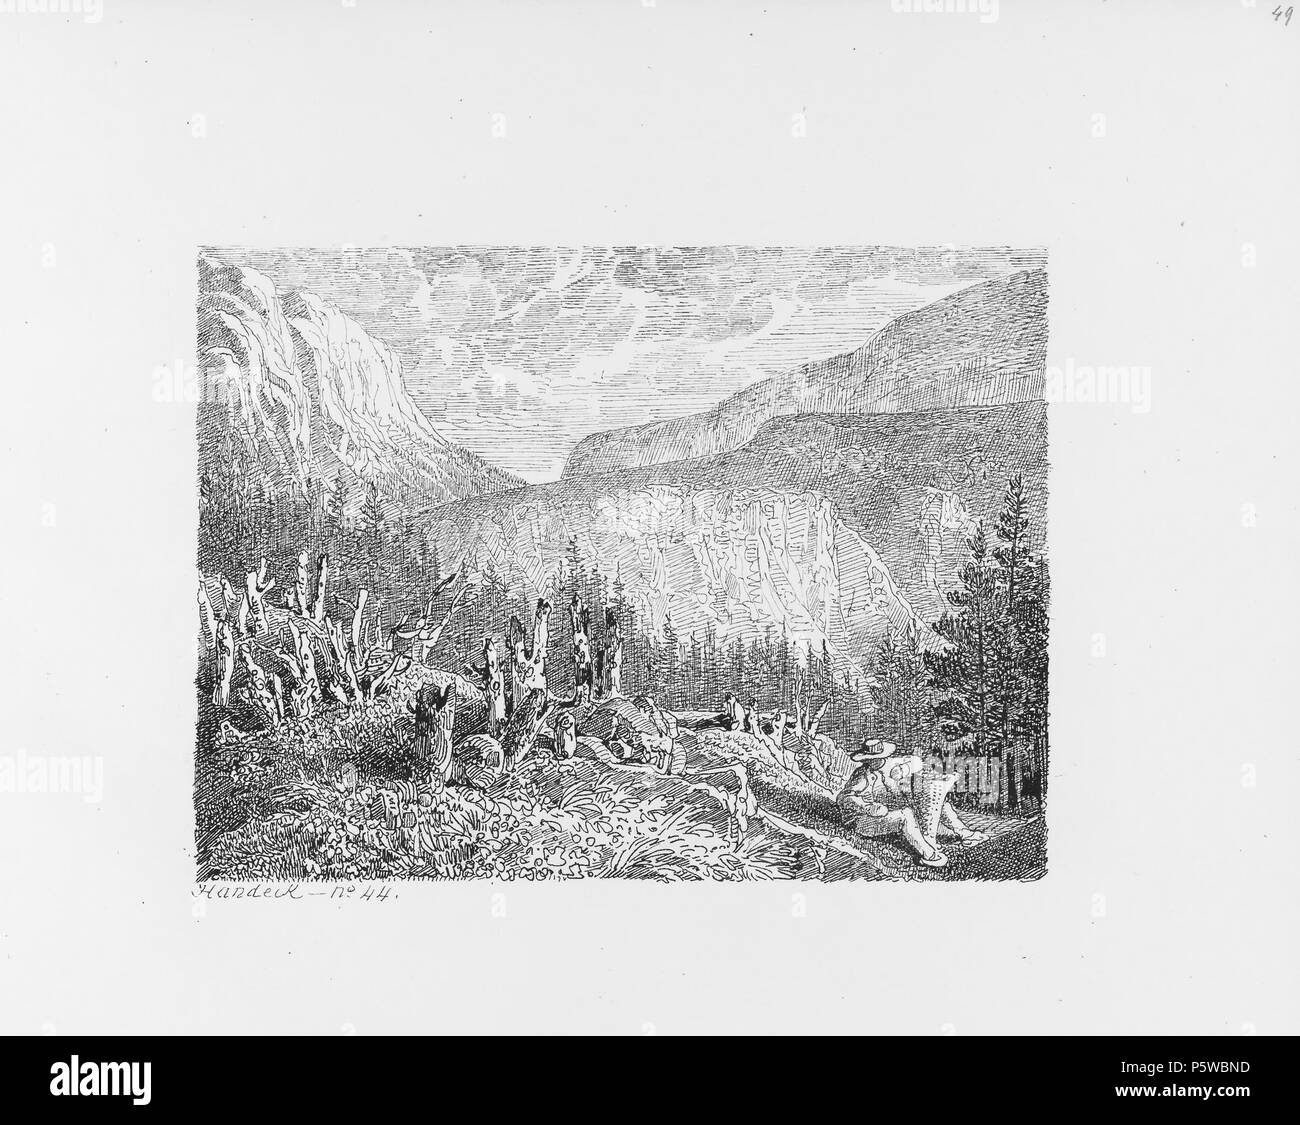 322 CH-NB-Voyage autour du Mont-Blanc dans les vallées d'Hérens de Zermatt et au Grimsel 1843-nbdig-19161-050 Stock Photo